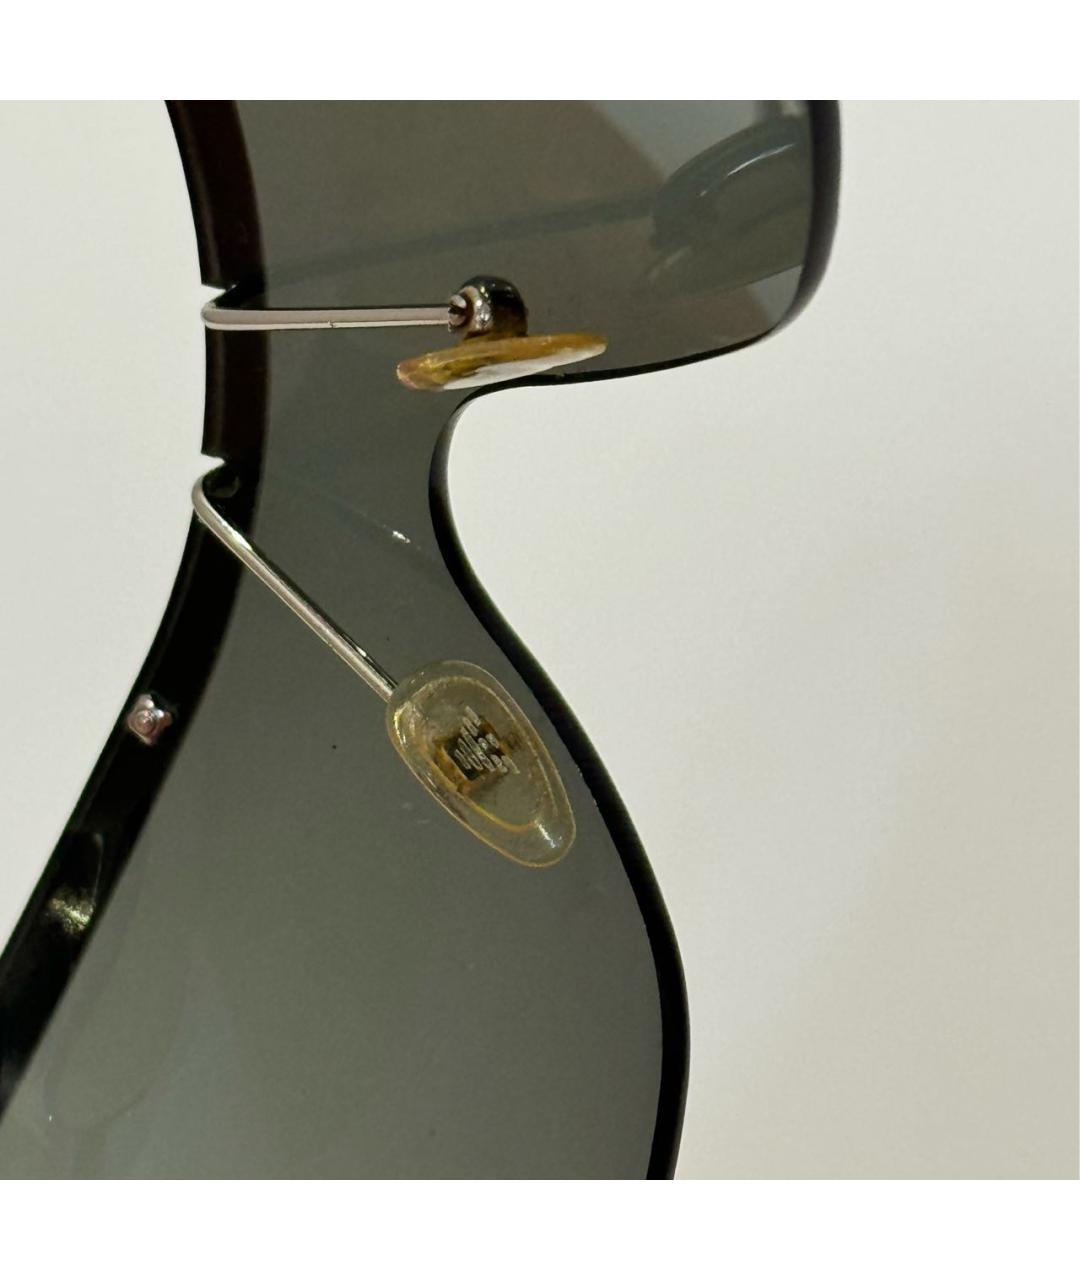 EMPORIO ARMANI Серебряные металлические солнцезащитные очки, фото 3